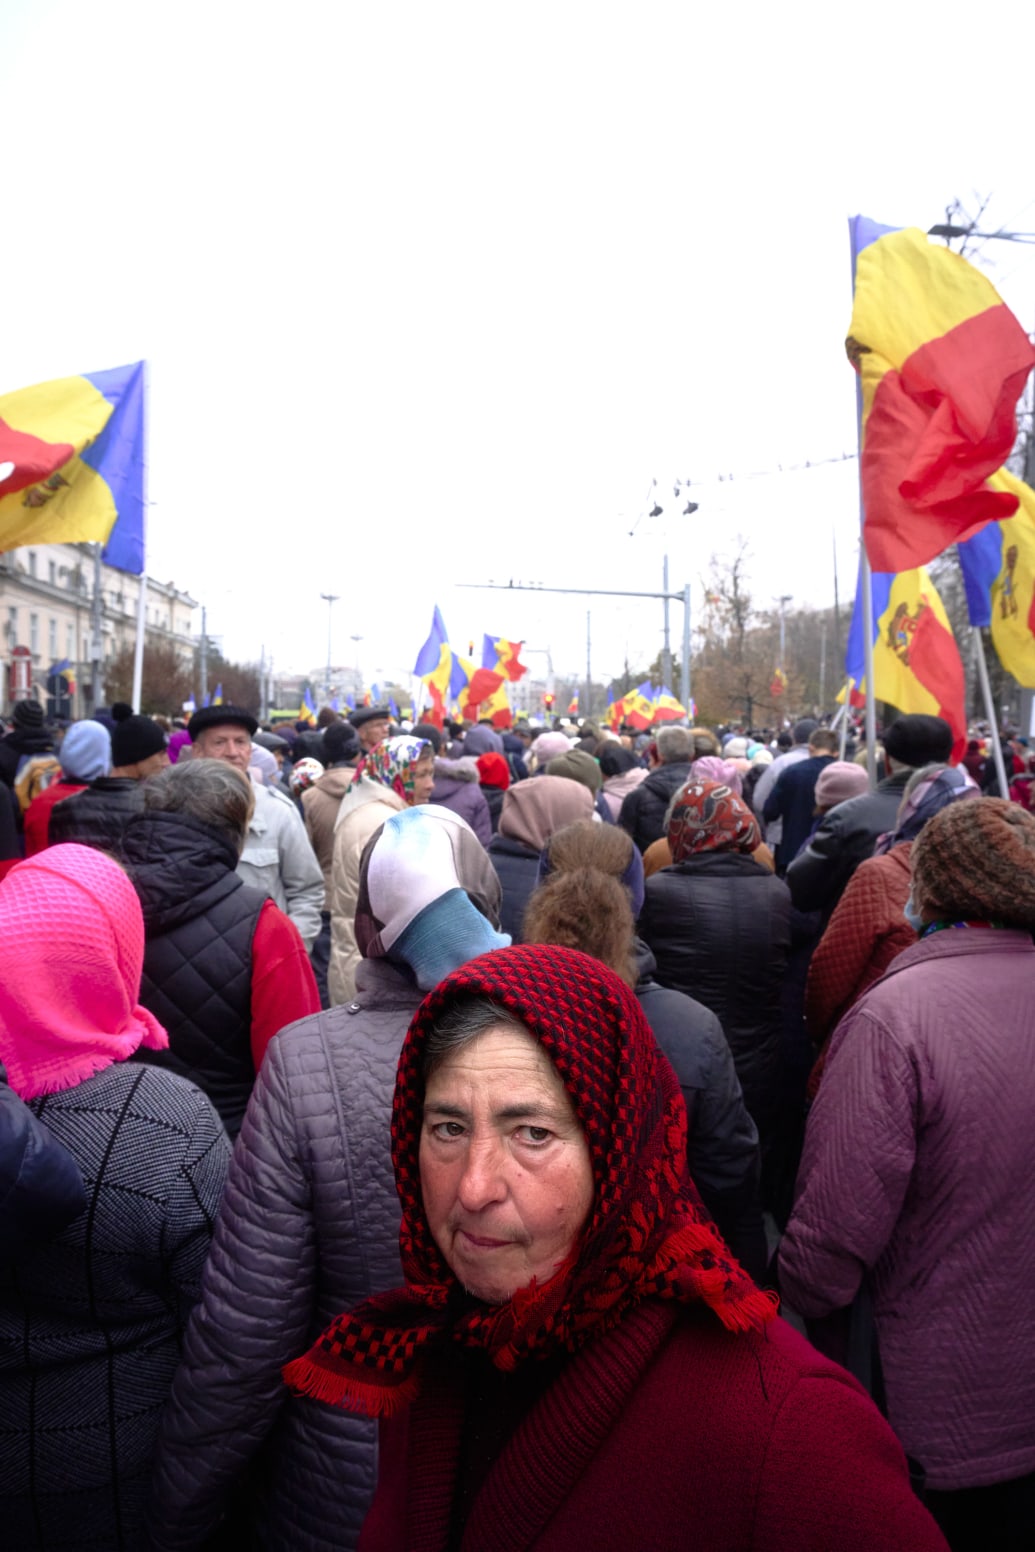 A protest in Moldova